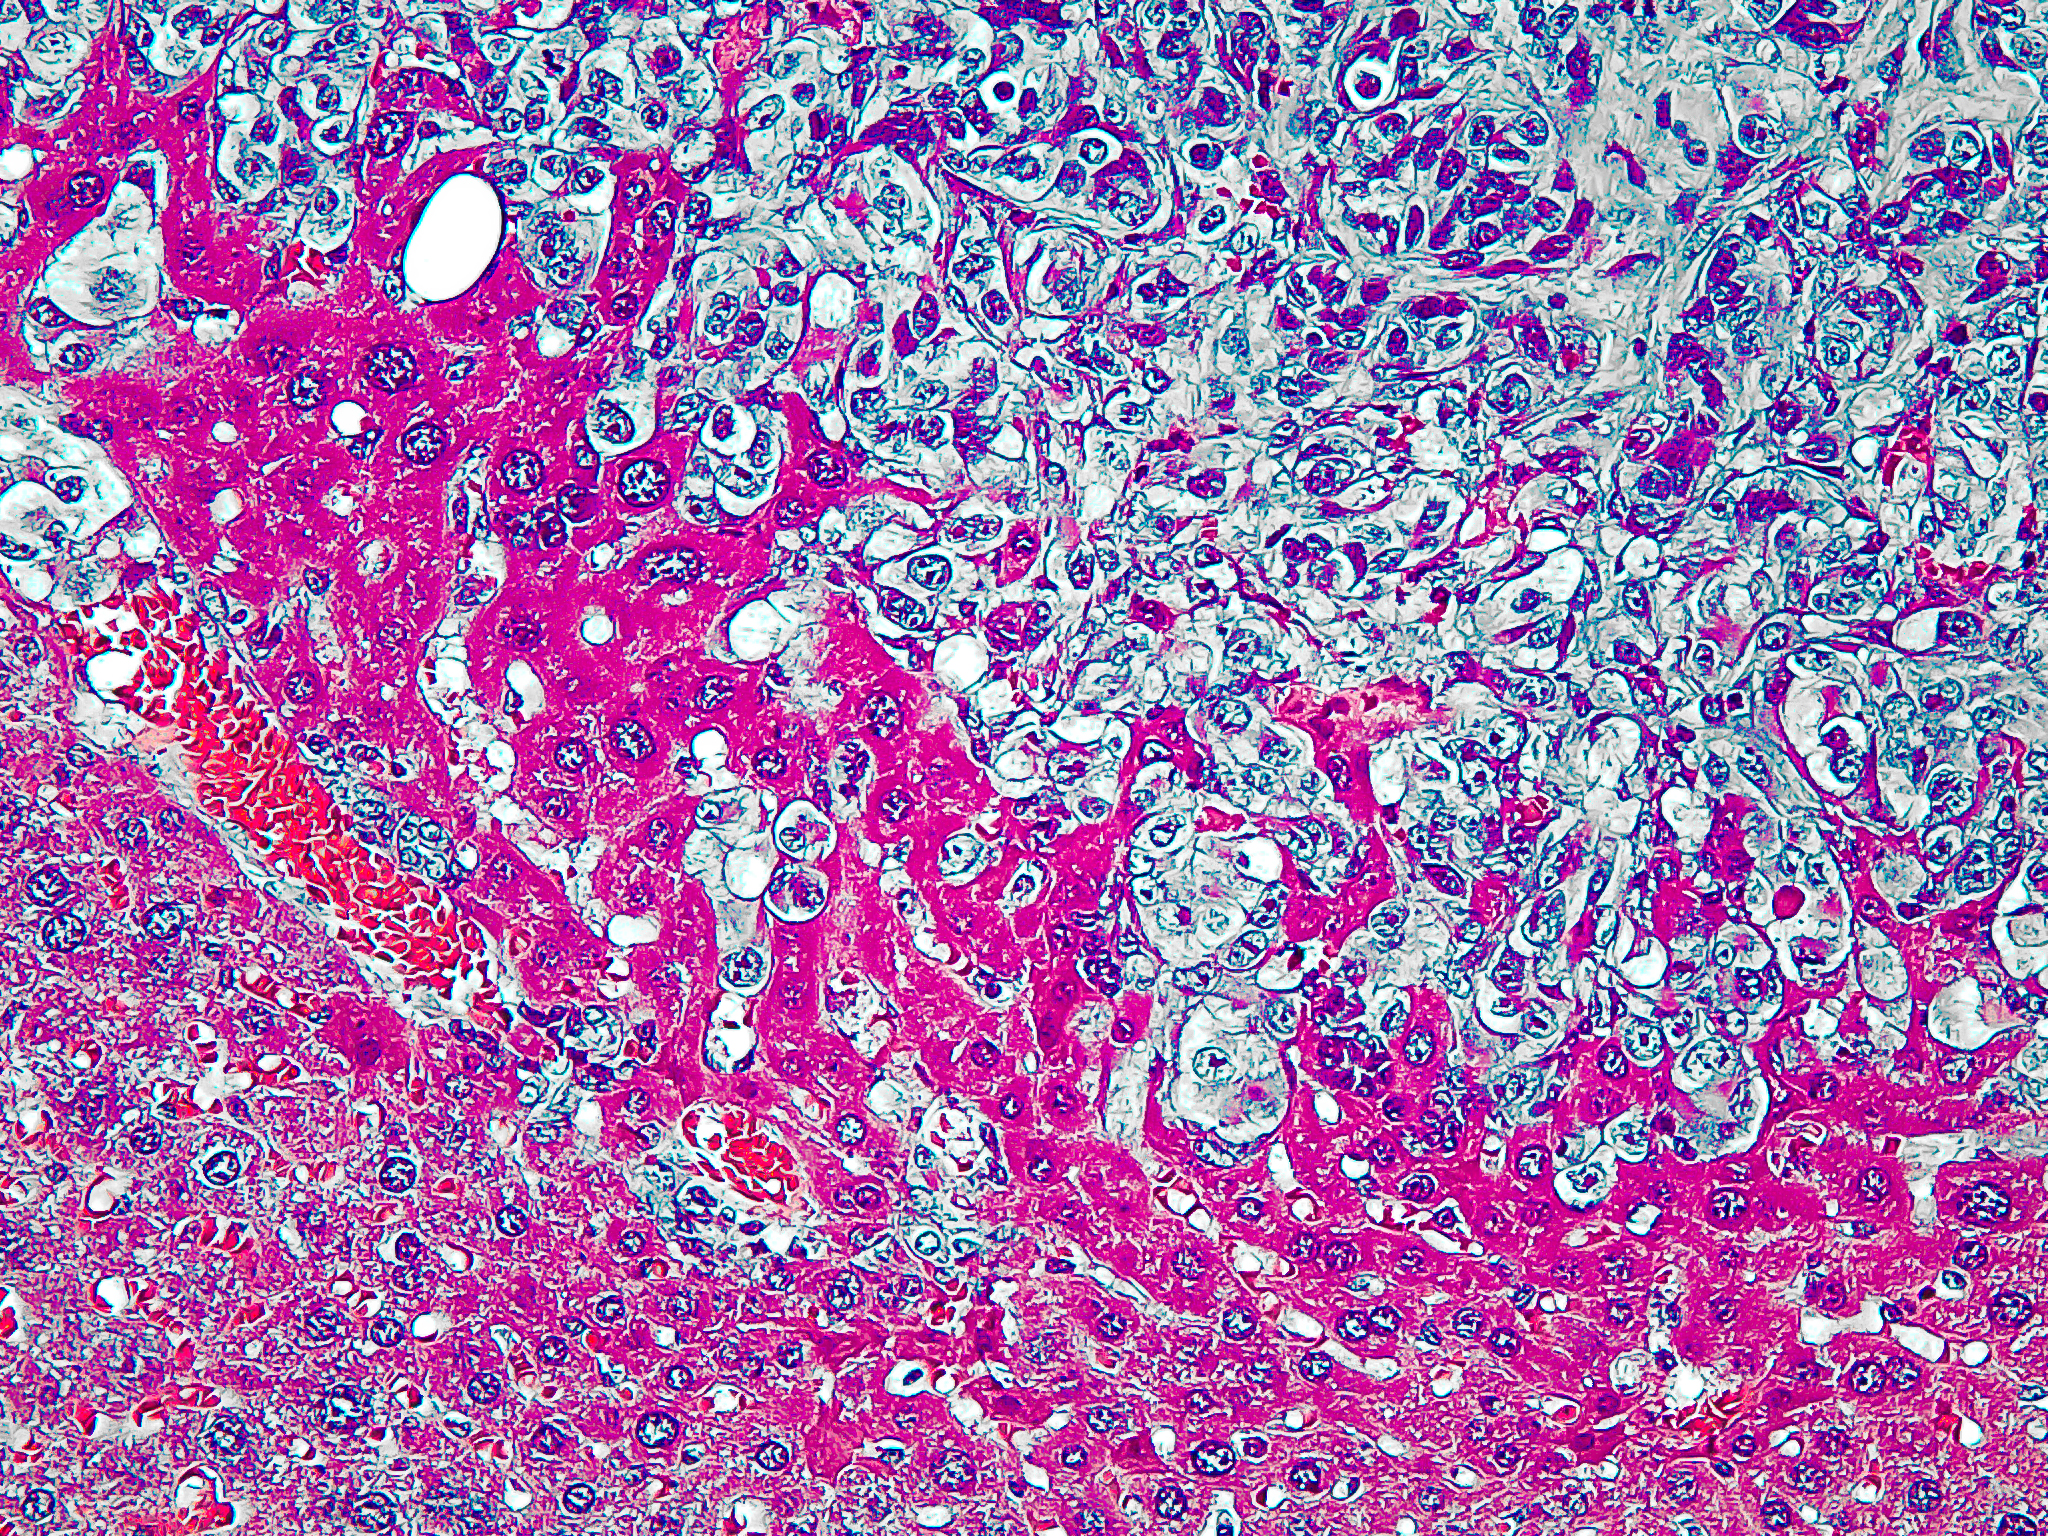 Liver Metastasis in Kaposi Sarcoma Mouse Model